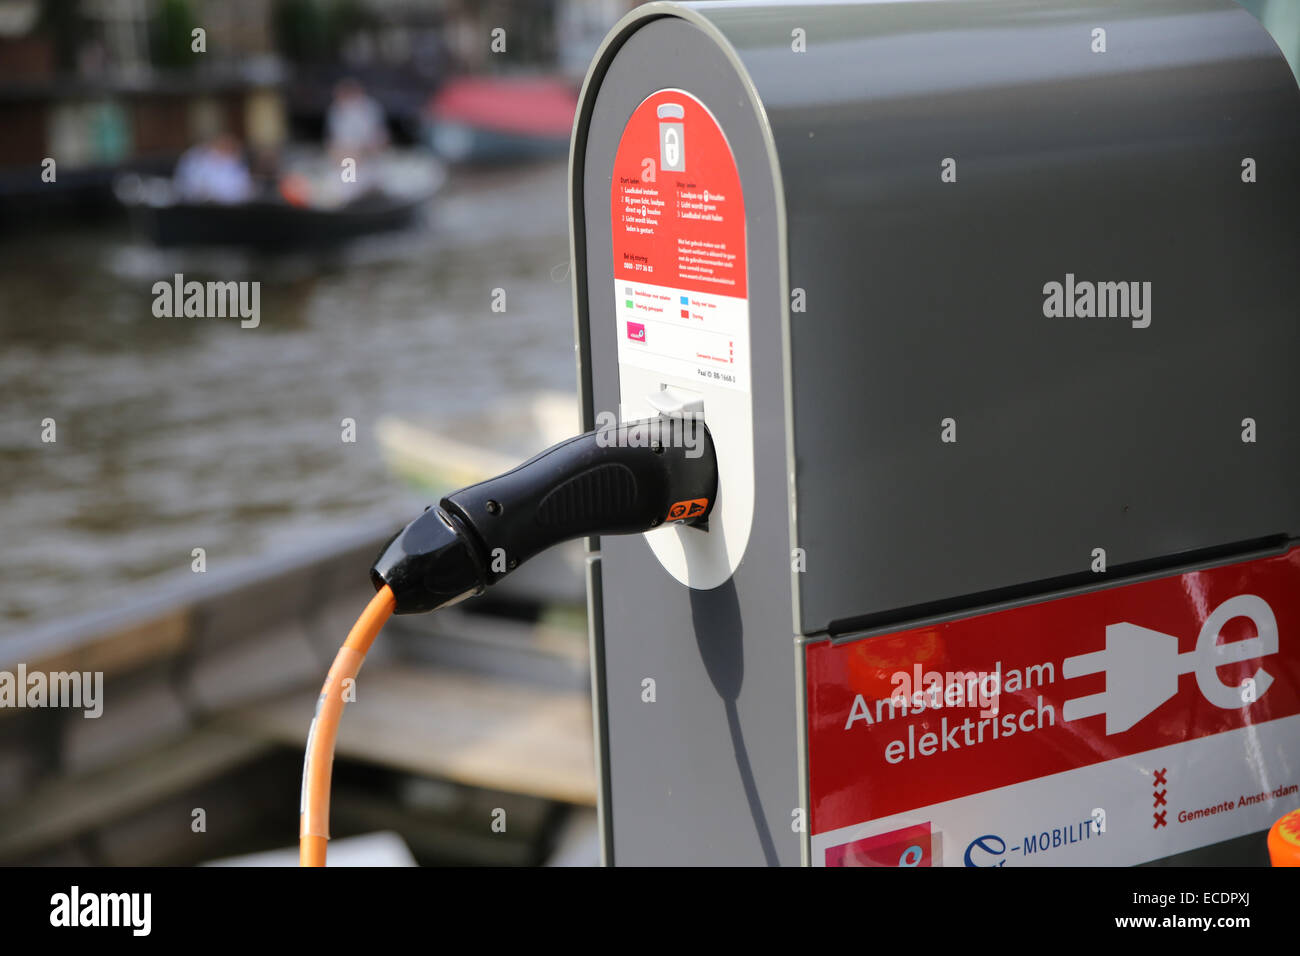 Station de recharge pour voitures électriques Amsterdam fil Banque D'Images